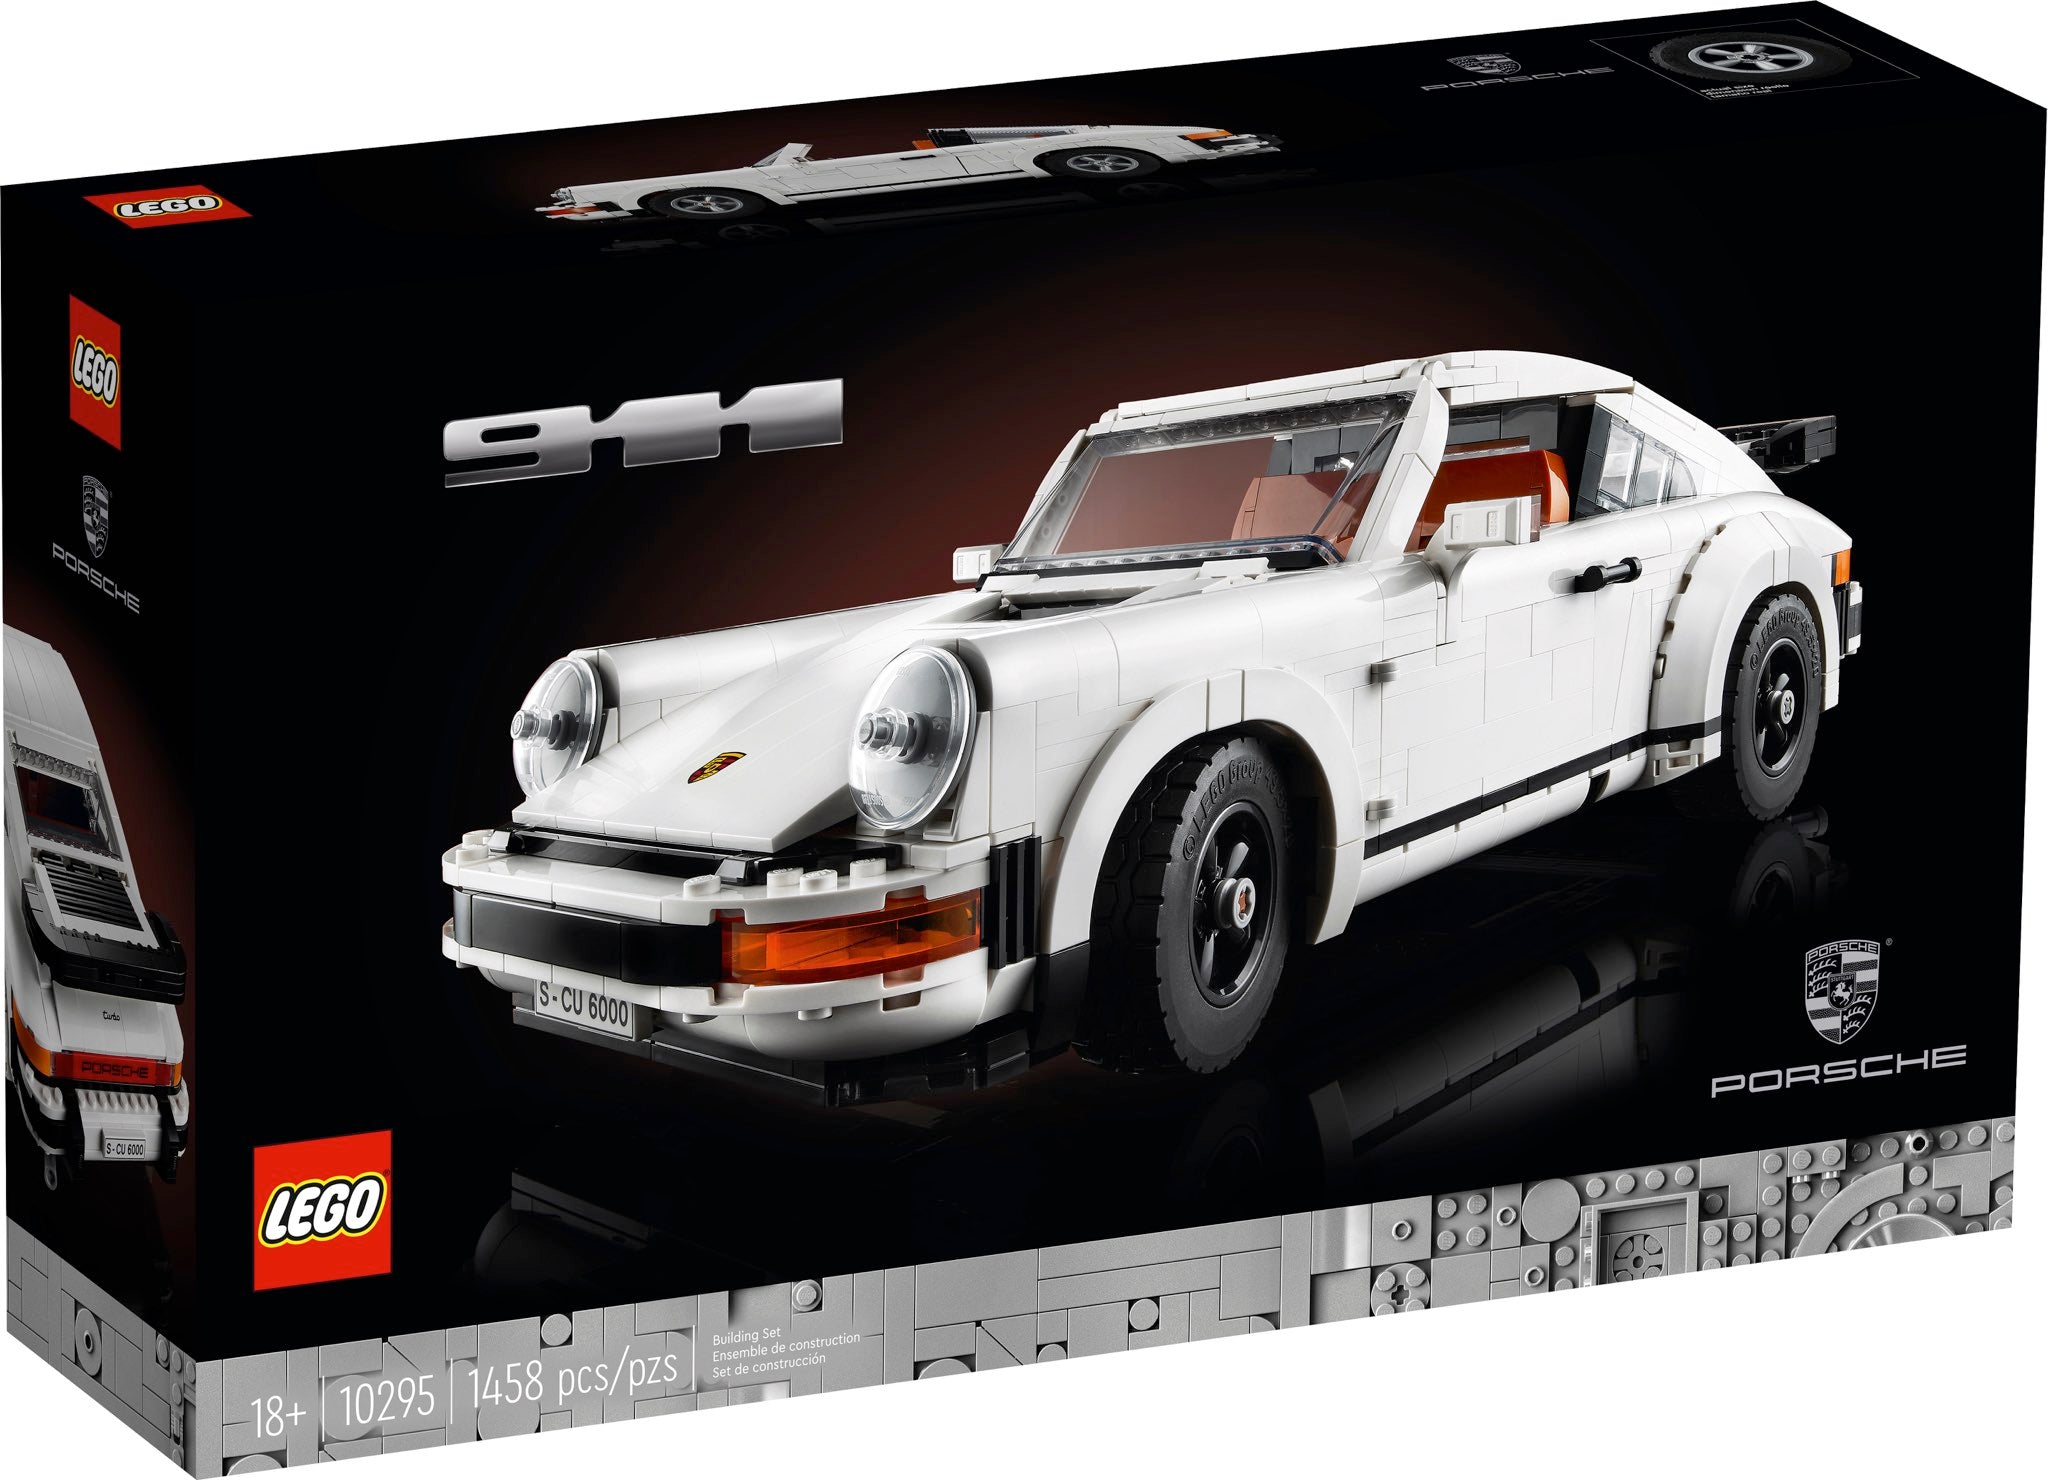 LEGO Icons Porsche 911 (10295) - im GOLDSTIEN.SHOP verfügbar mit Gratisversand ab Schweizer Lager! (5702016914351)